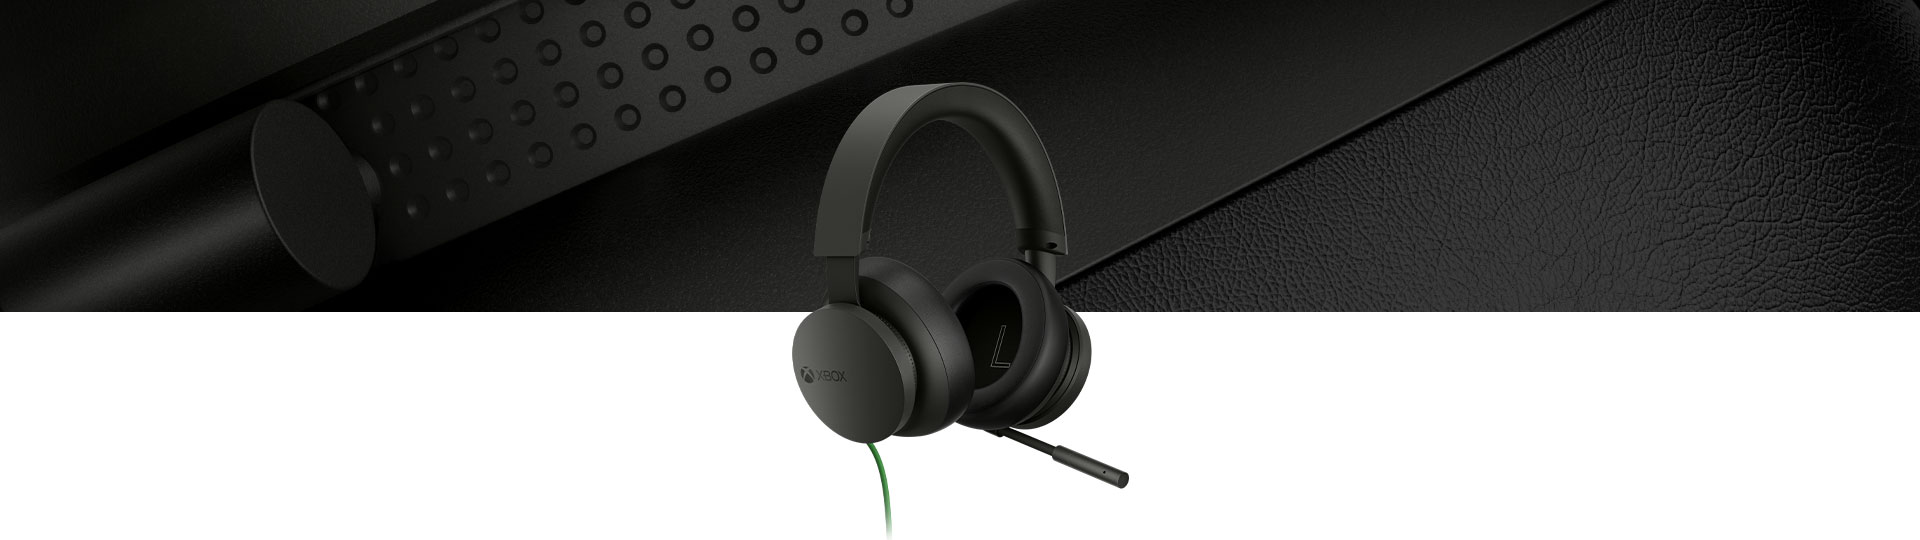 Xbox-stereoheadset med en närbild av headsetet i bakgrunden